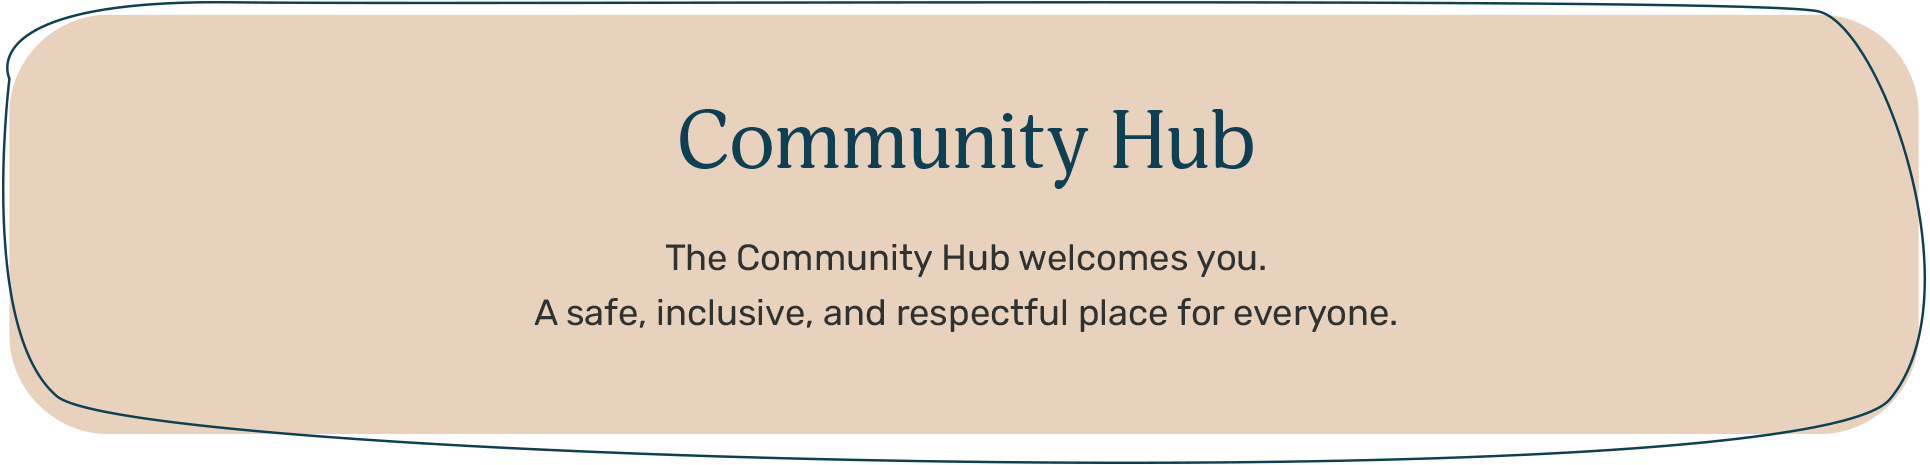 Community Hub Header